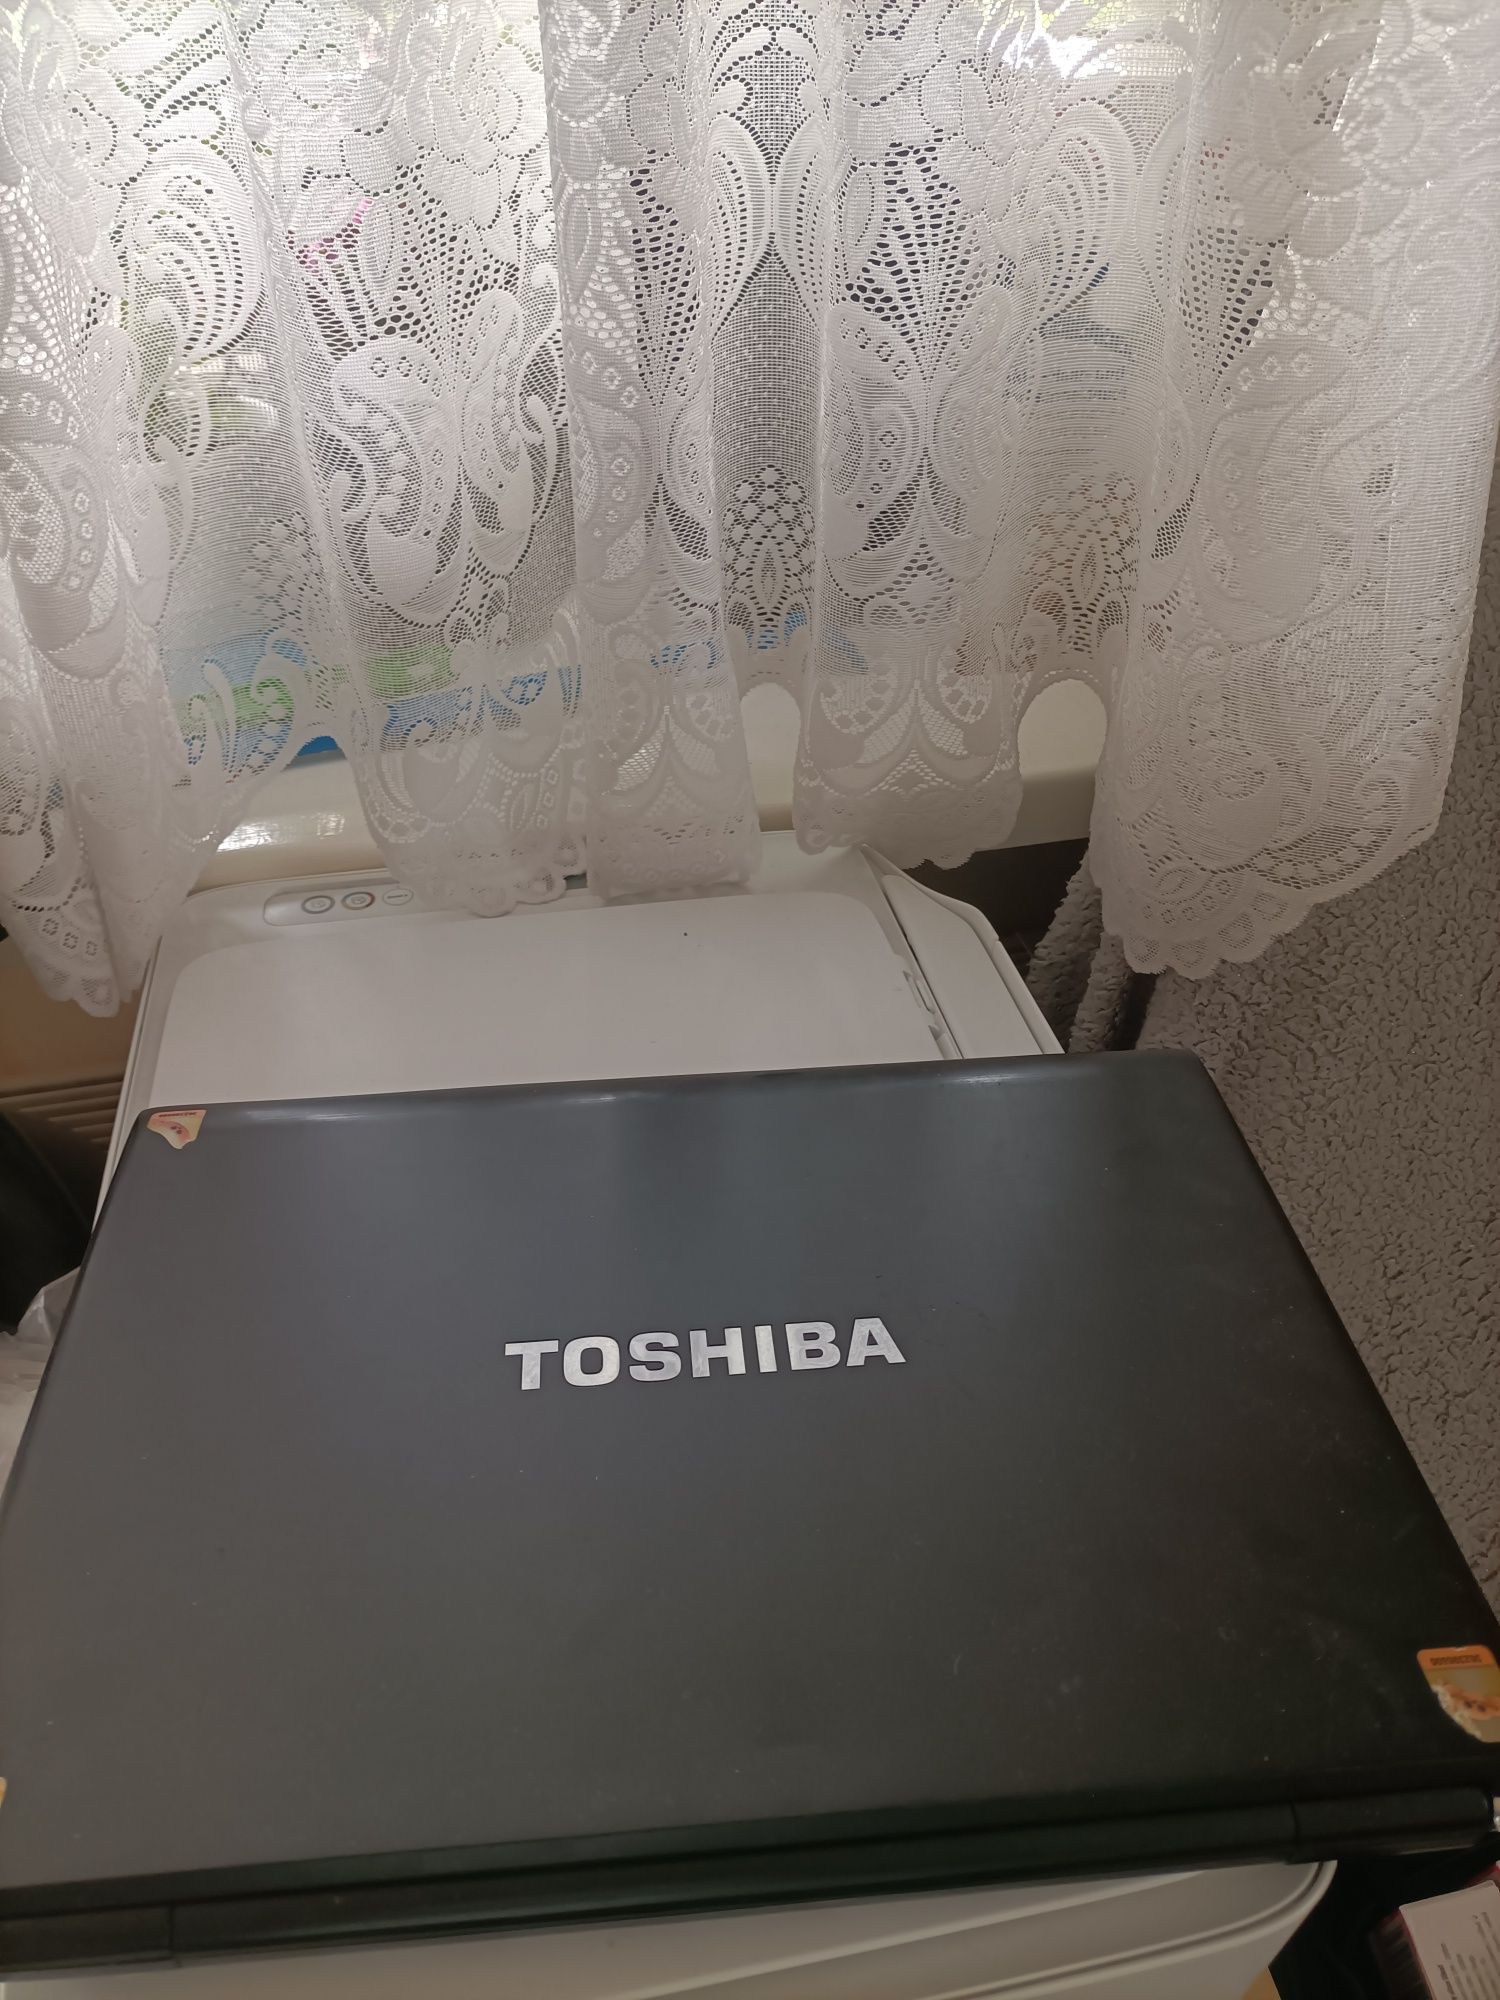 Laptop Toshiba dobry stan